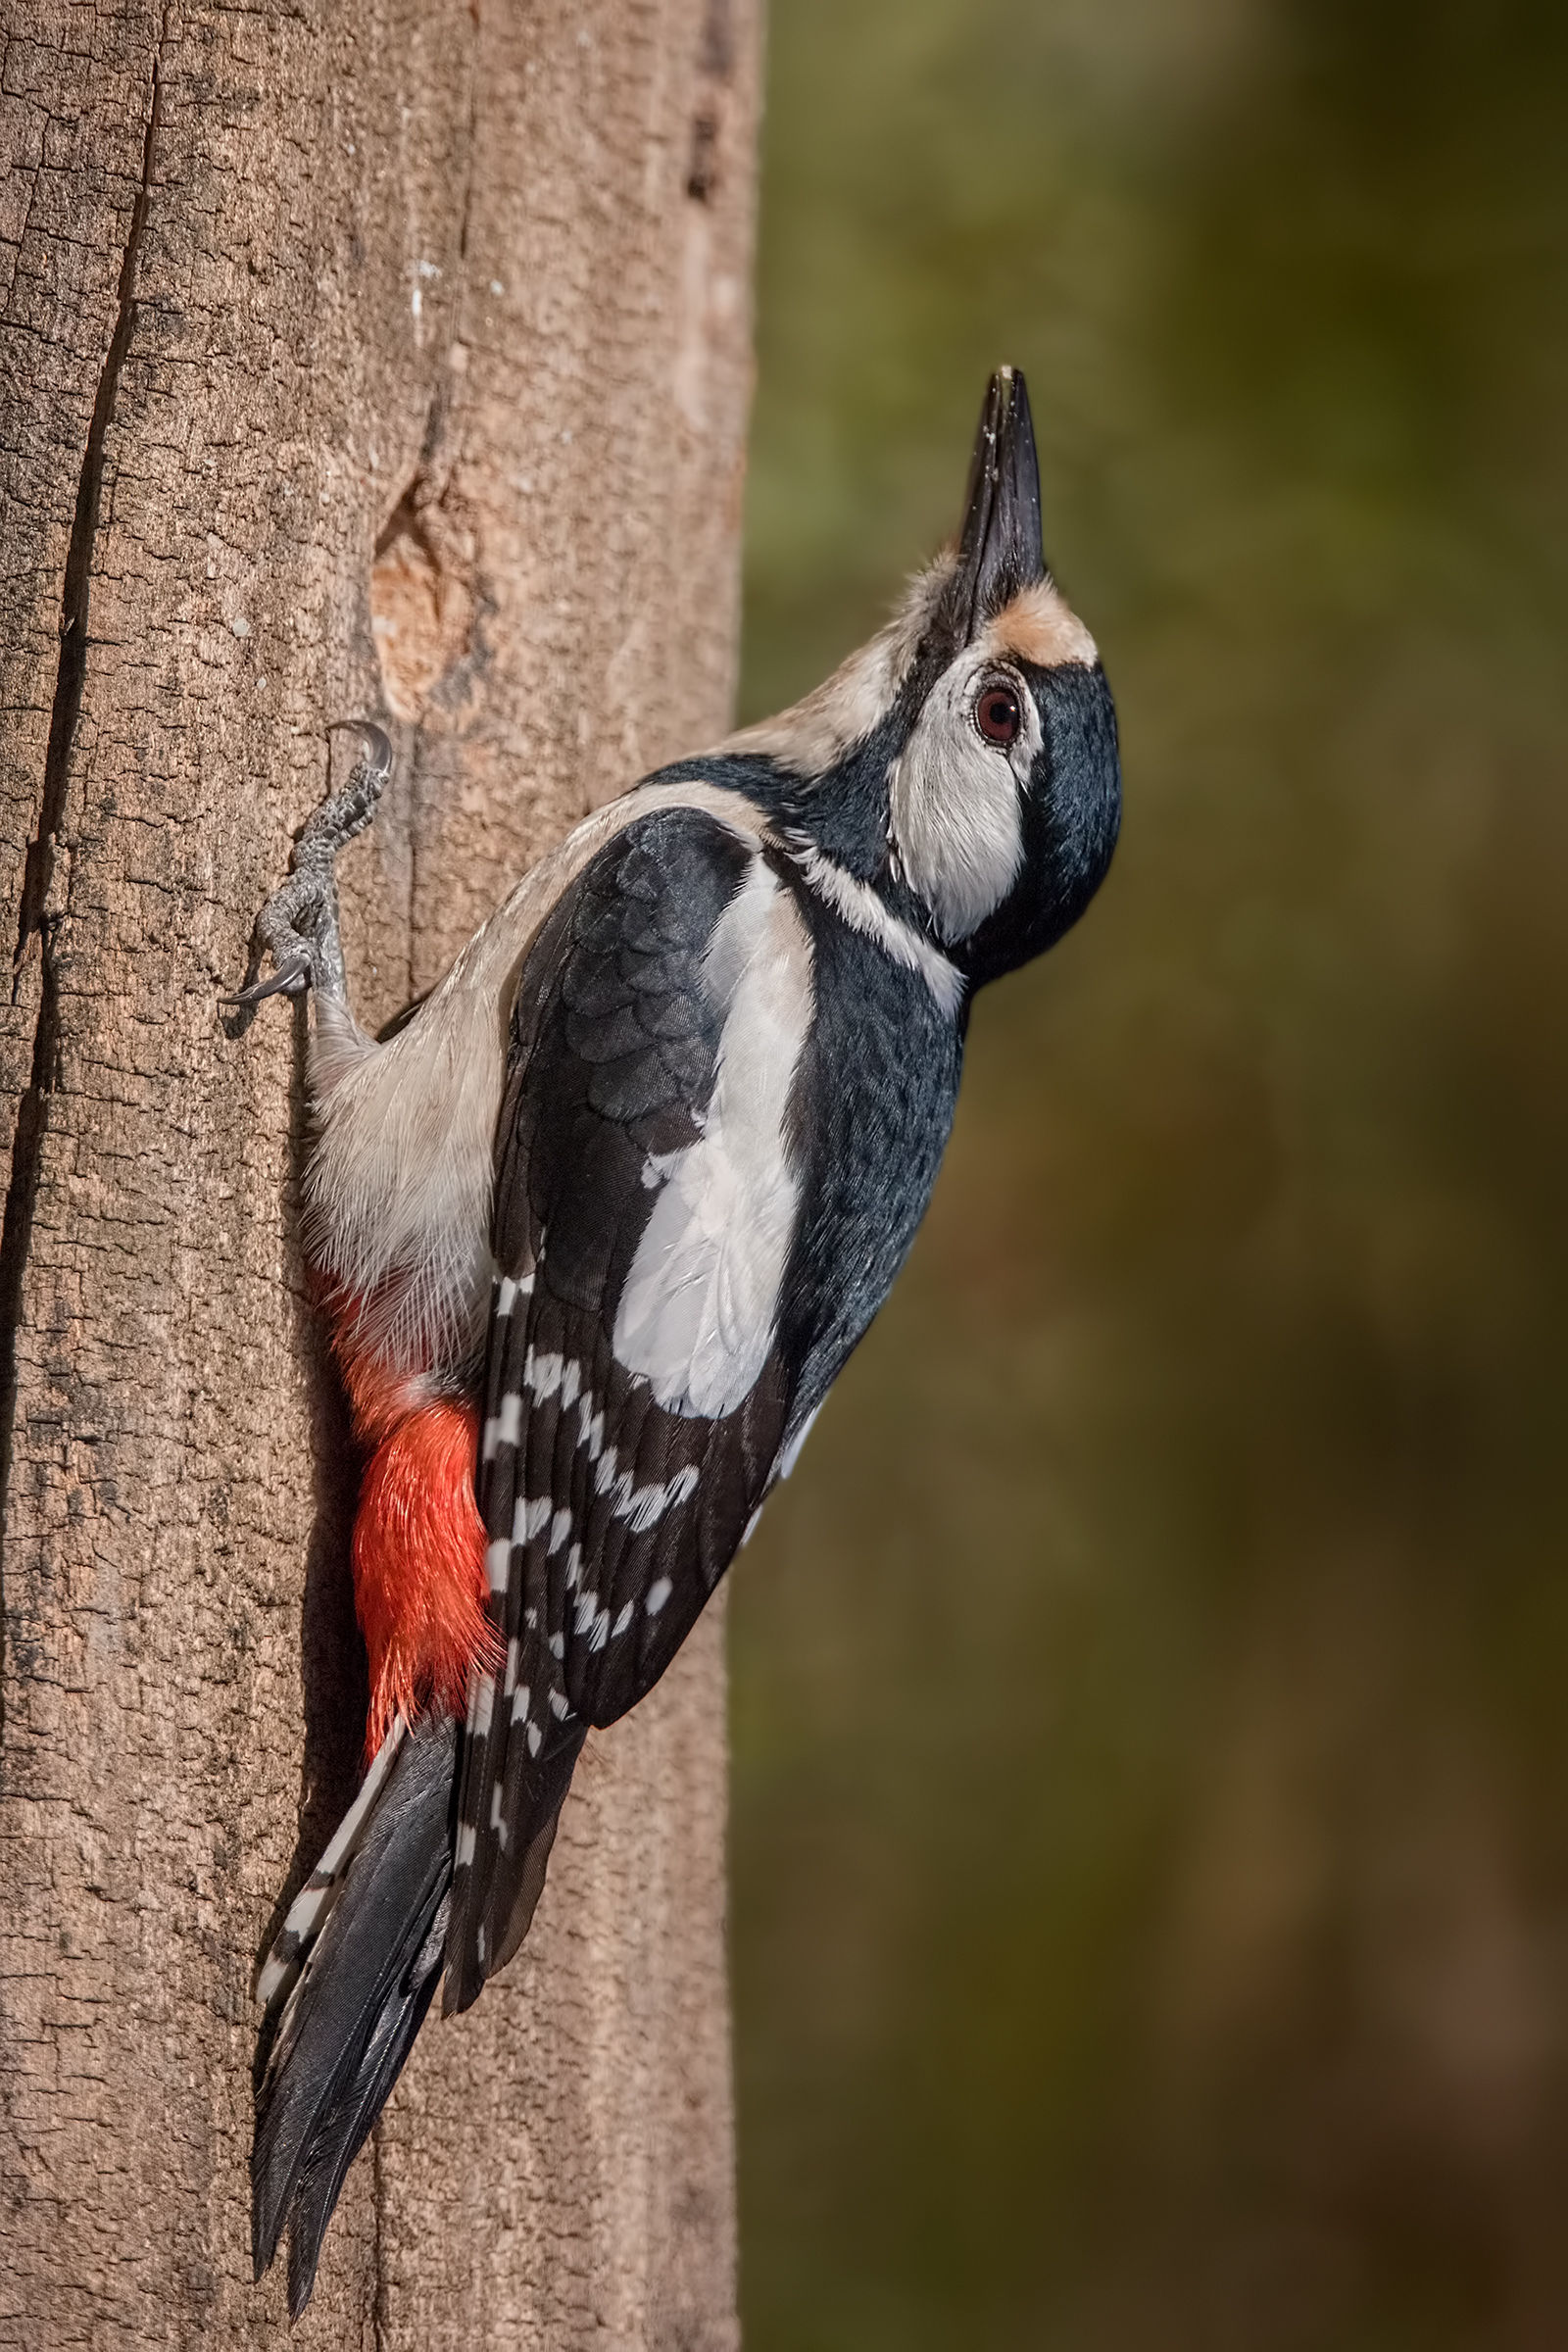 Great female woodpecker...